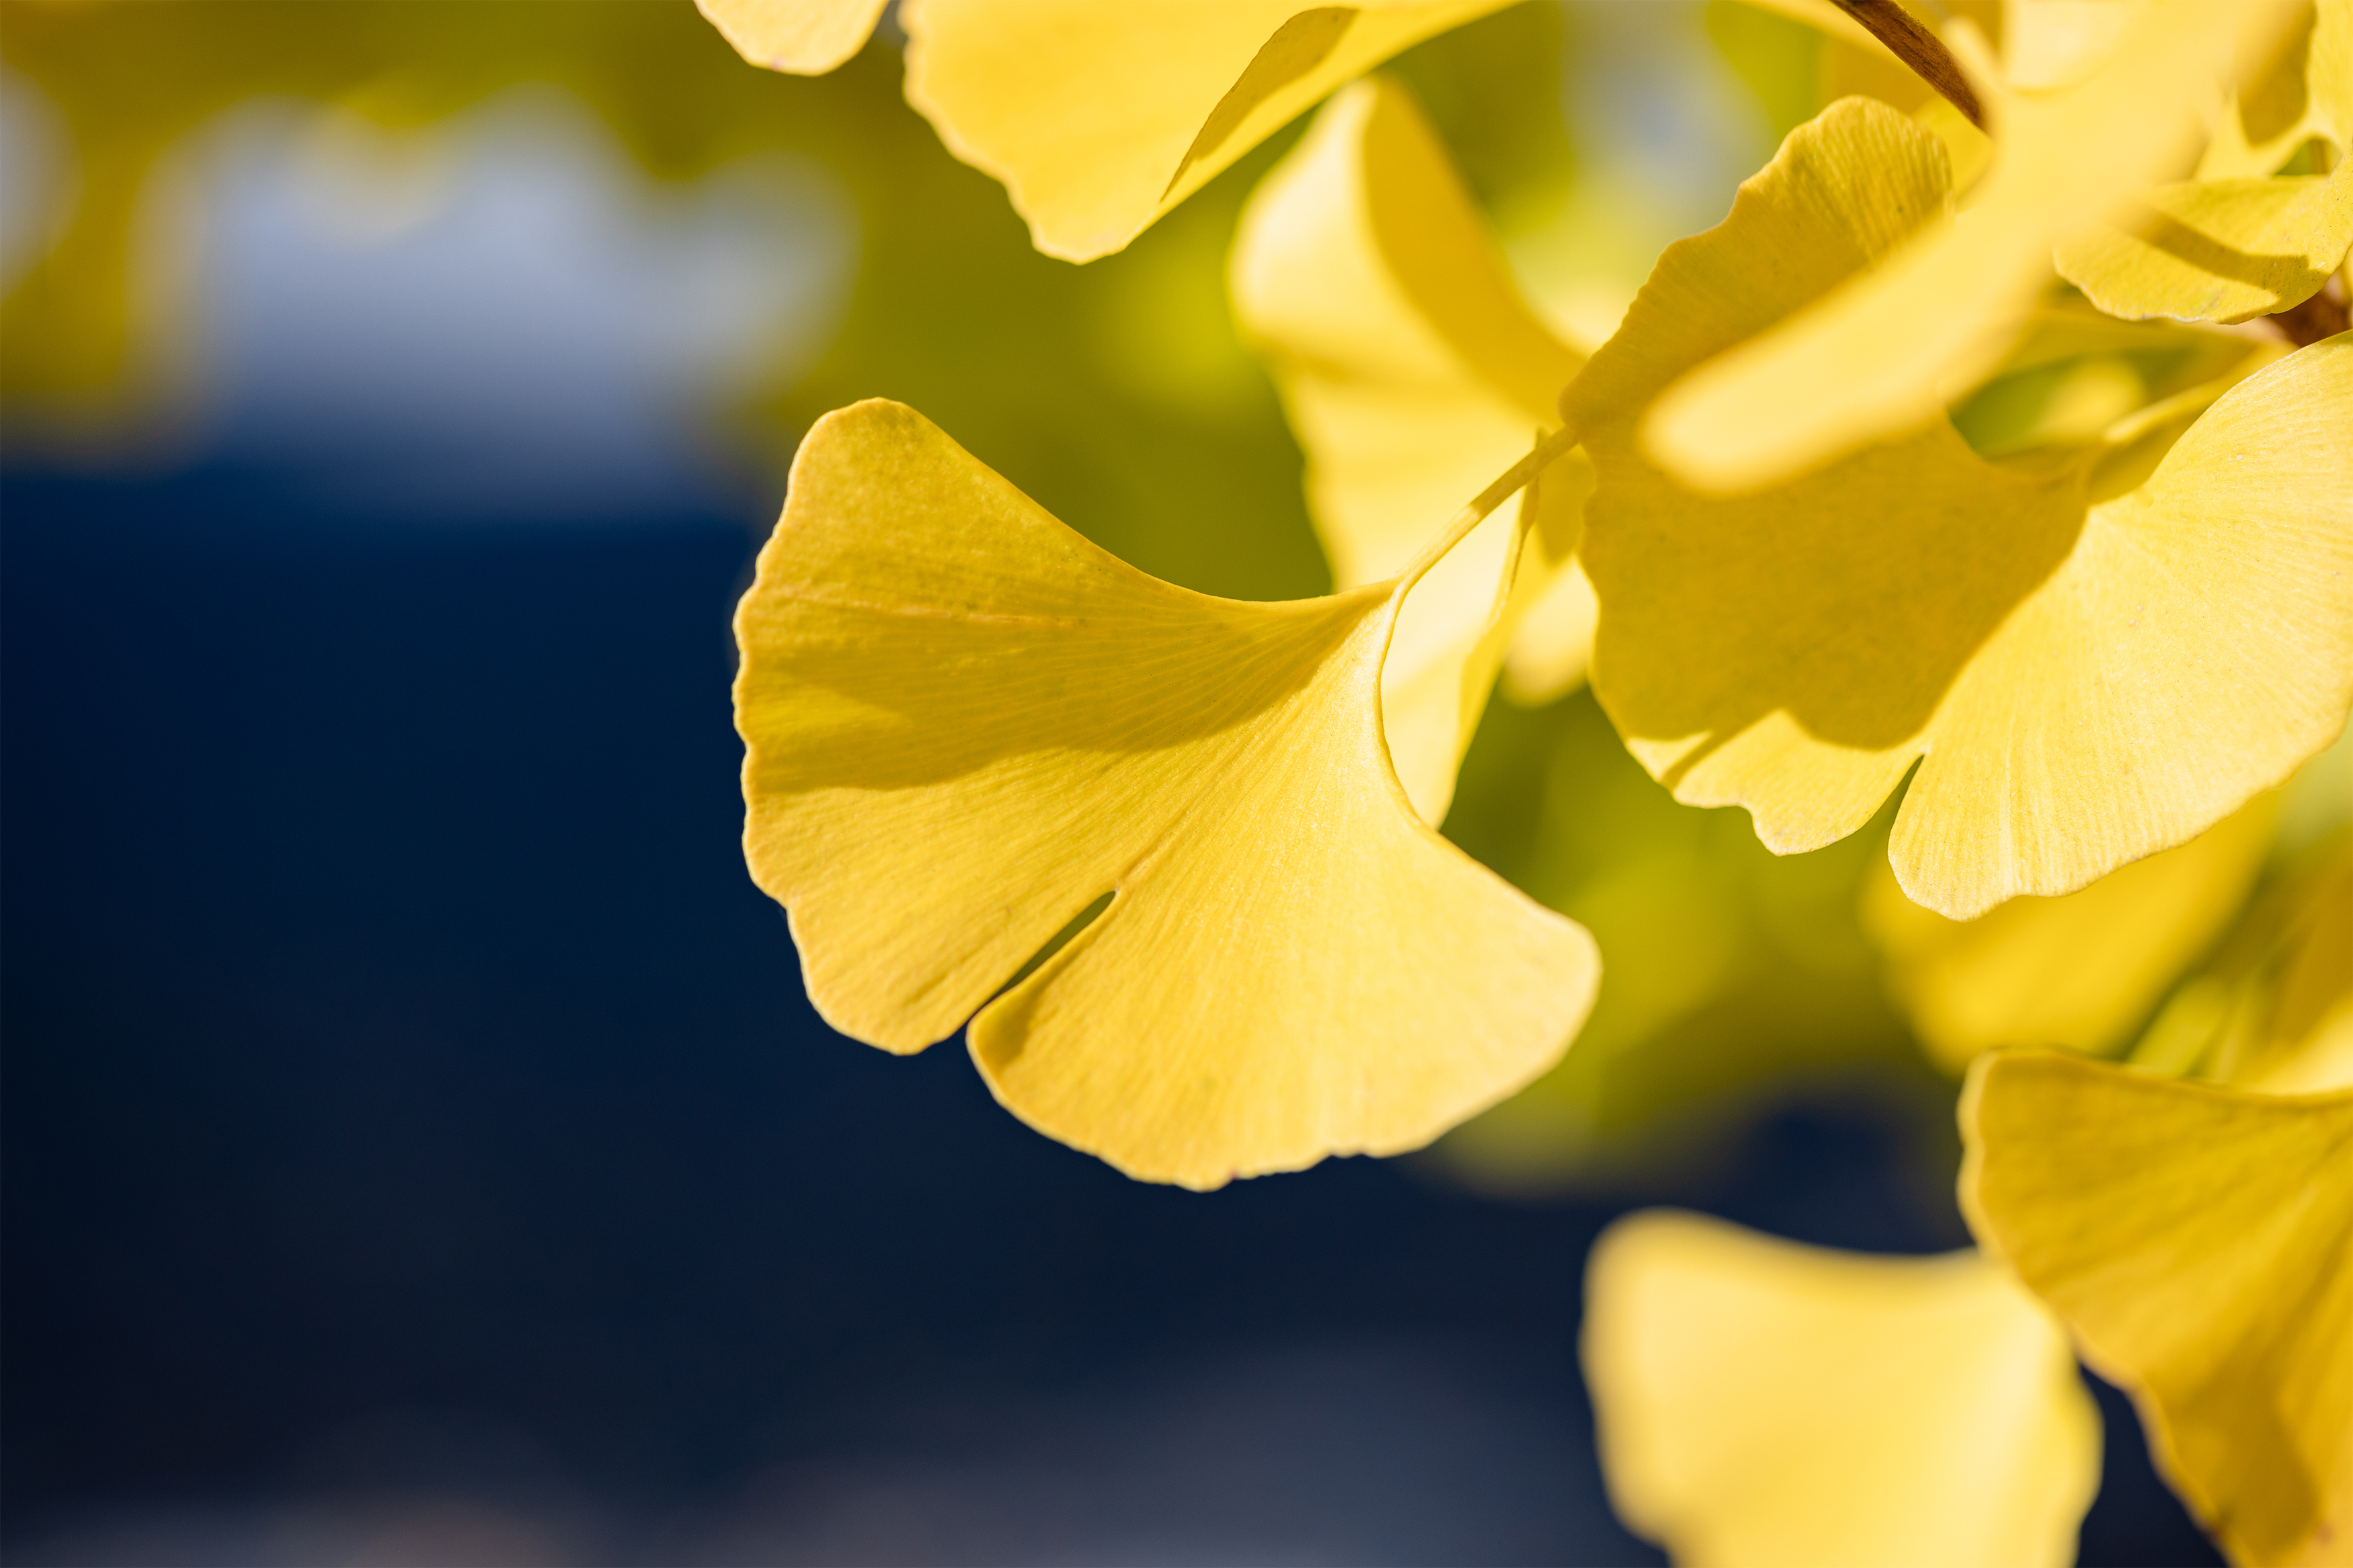 イチョウ 銀杏の葉 無料の高画質フリー写真素材 イメージズラボ